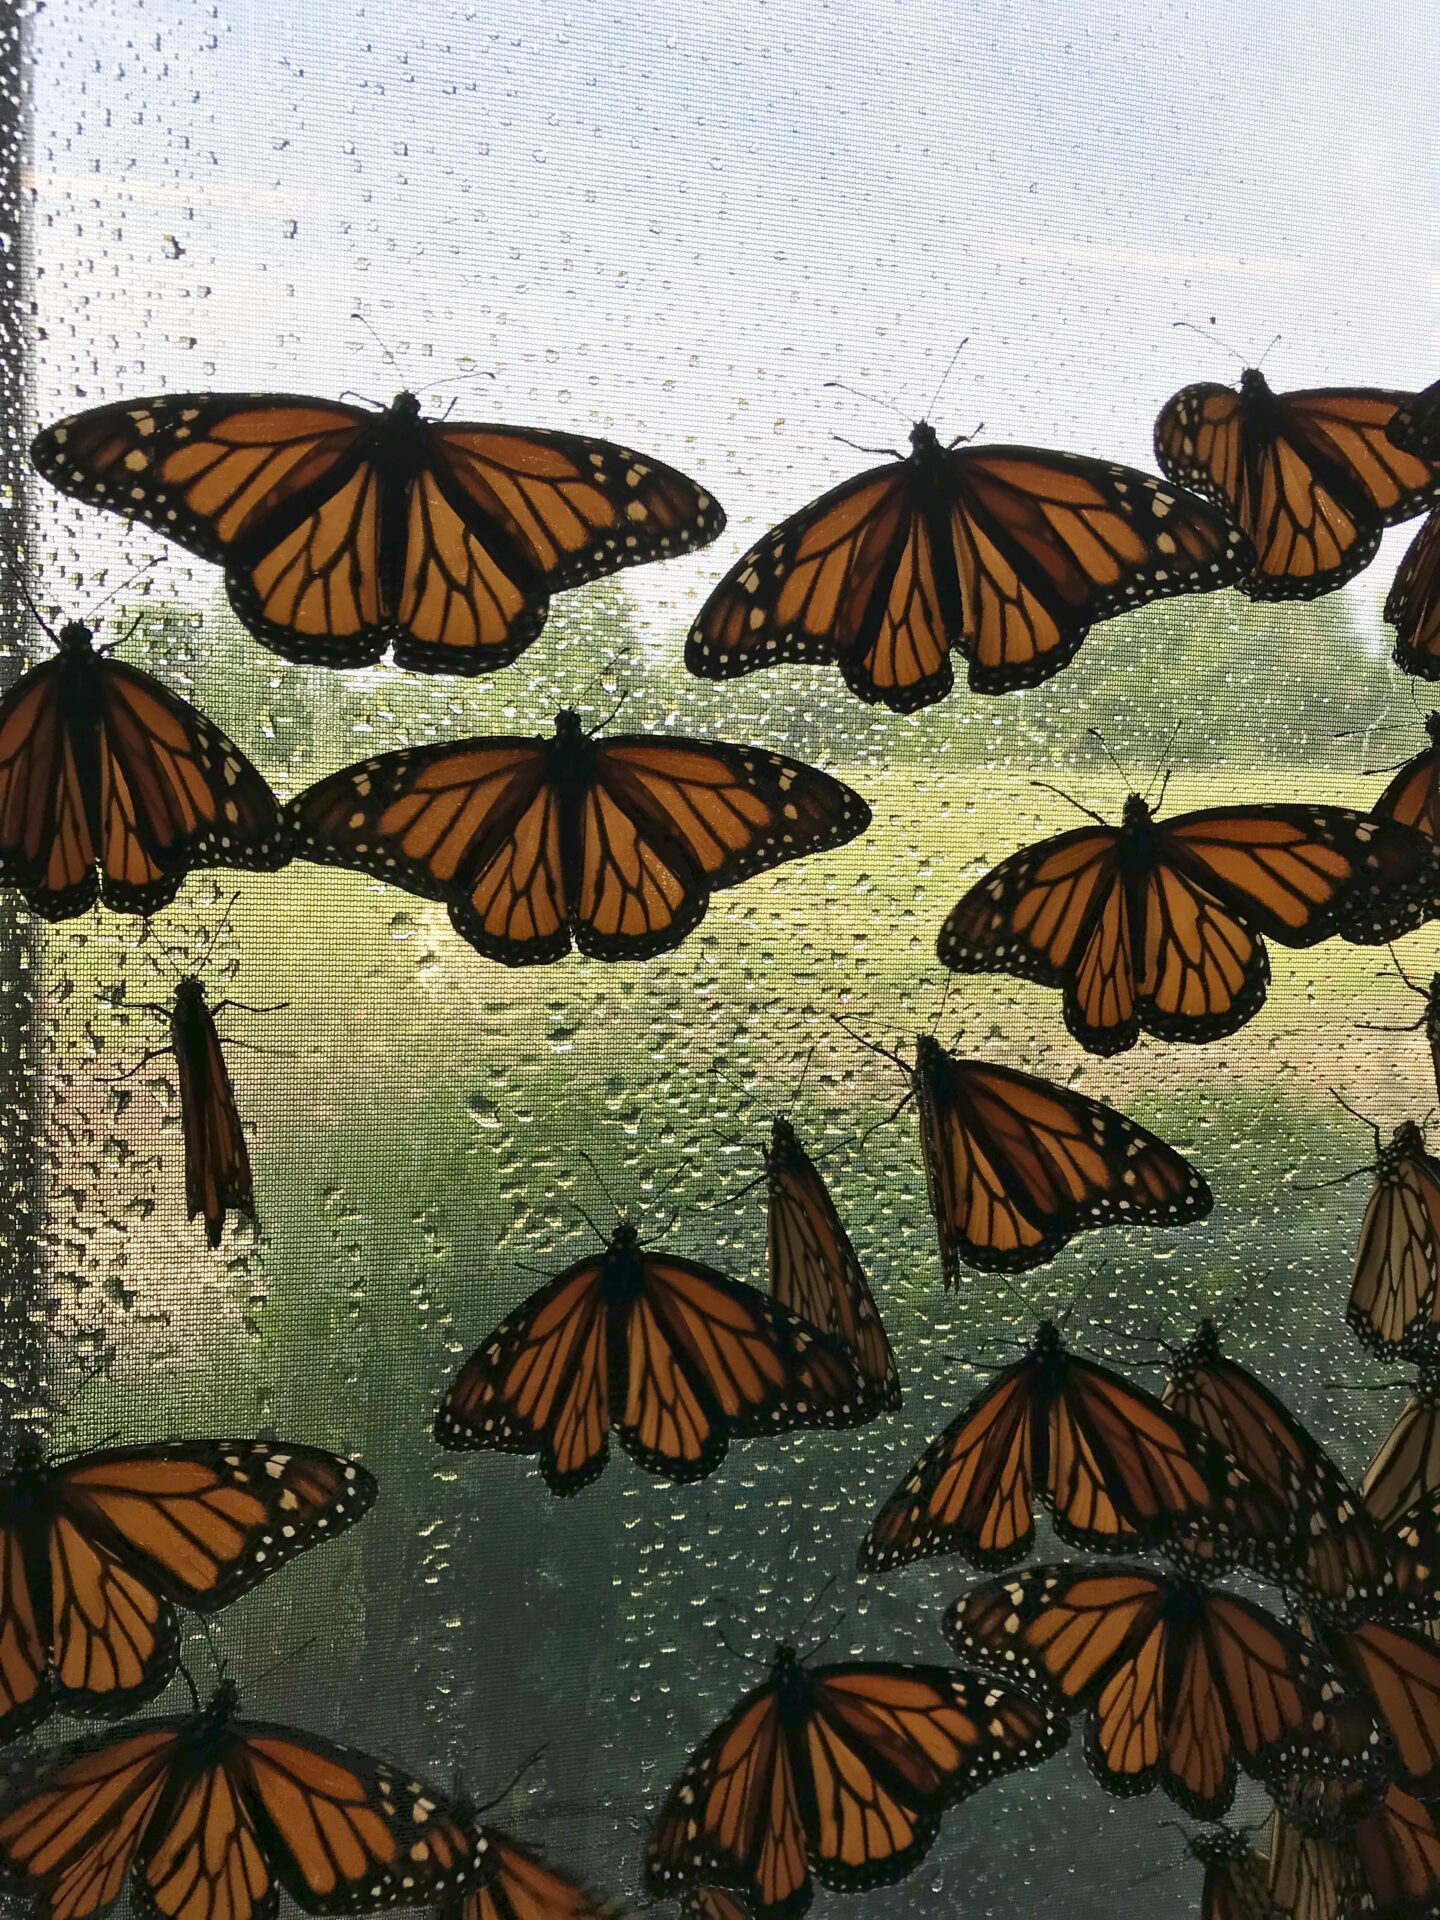 Monarchs in BioTent